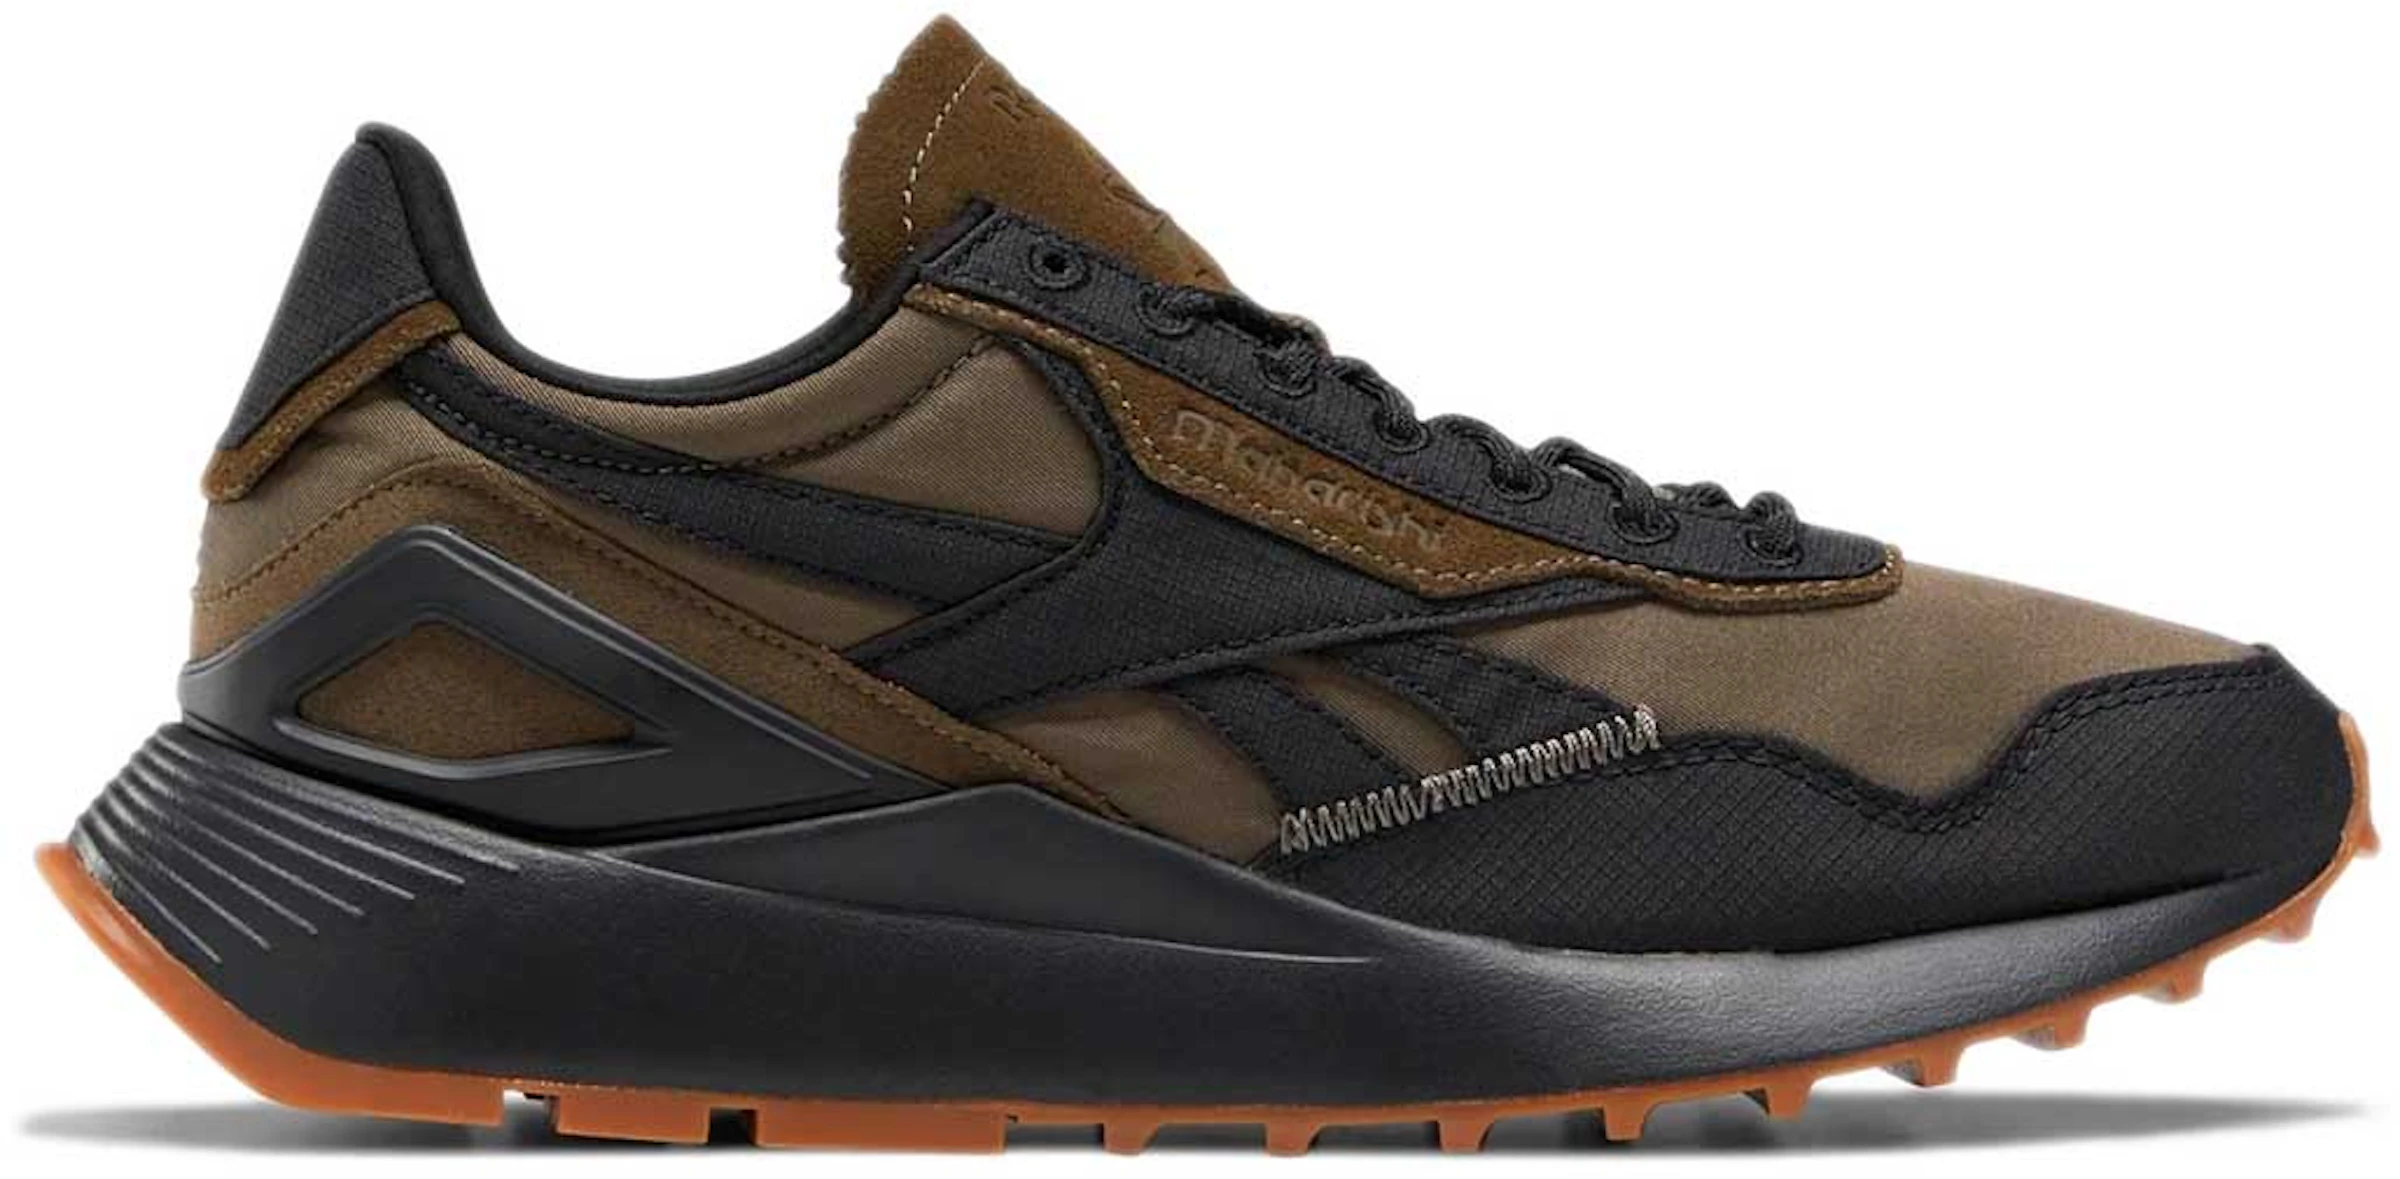 Compra Leather Calzado y sneakers nuevos - StockX